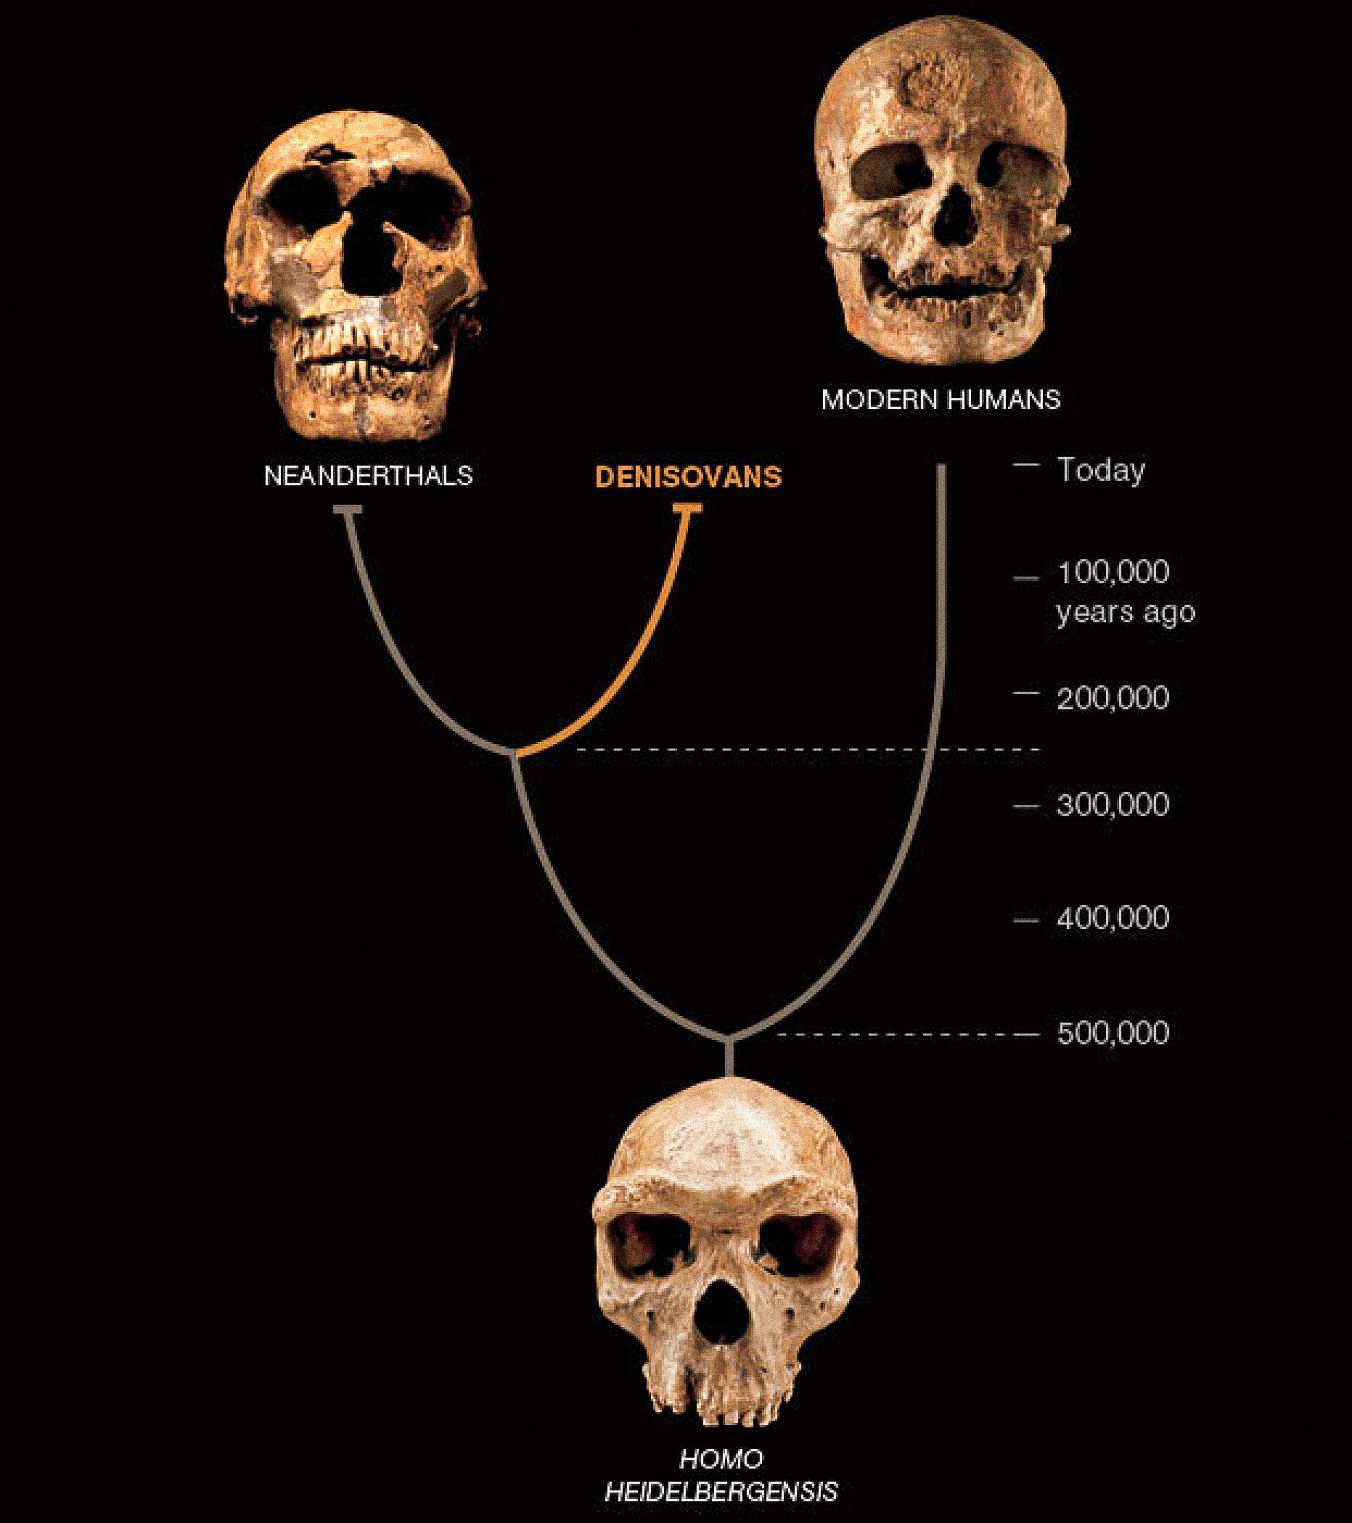 به نظر می رسد نوع سوم انسان به نام دنیسووان در آسیا با نئاندرتال ها و انسان های اولیه مدرن همزیستی داشته است. دو مورد اخیر از فسیل ها و مصنوعات فراوان شناخته شده اند. Denisovans تا کنون تنها با DNA یک تراشه استخوان و دو دندان تعریف شده است - اما پیچیدگی جدیدی را در داستان انسان نشان می دهد.